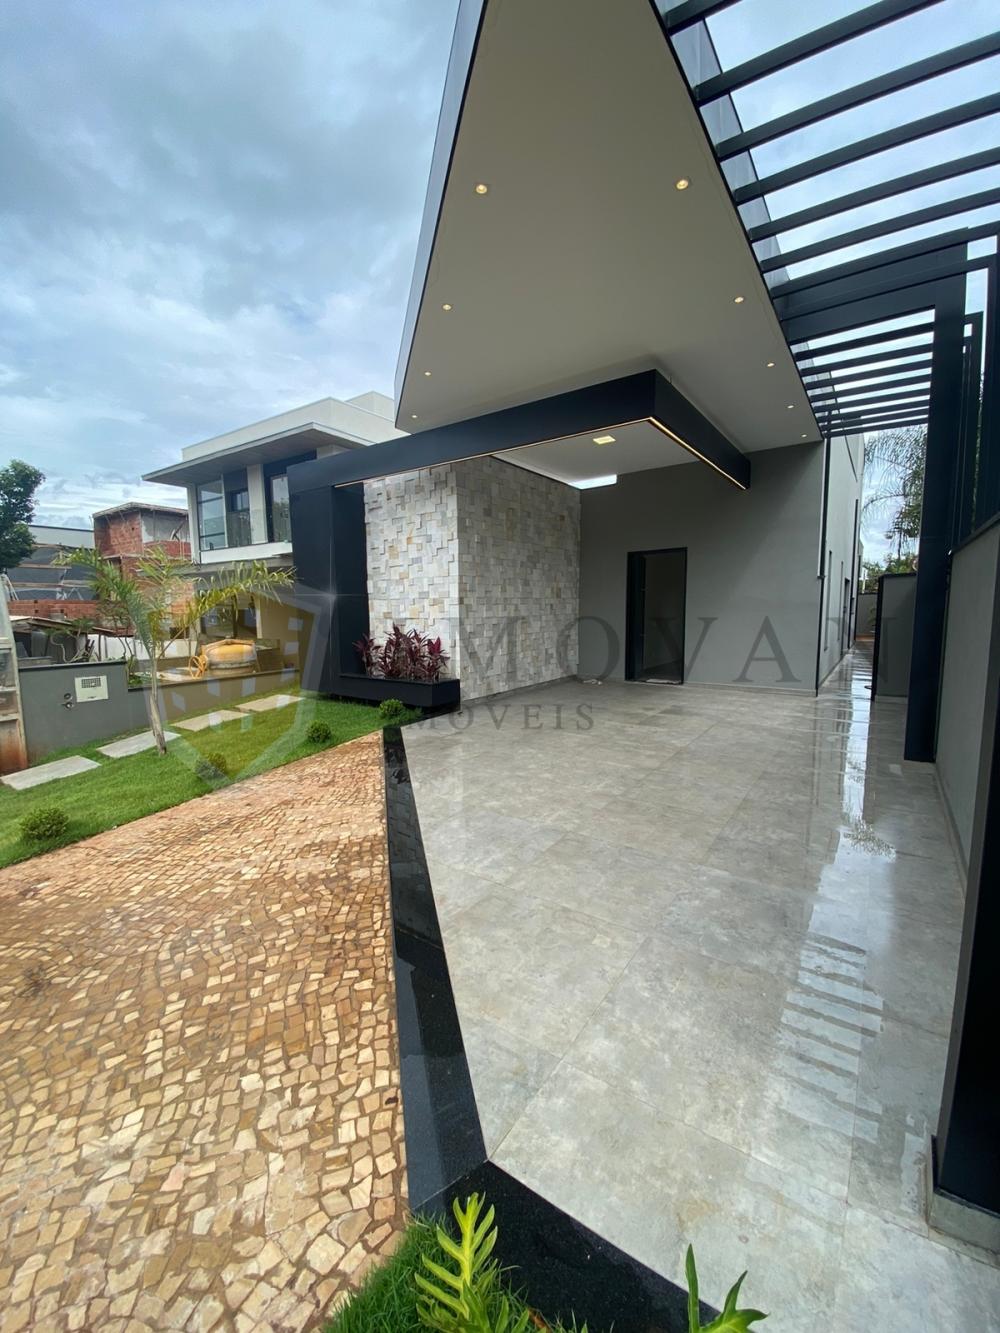 Comprar Casa / Condomínio em Bonfim Paulista R$ 1.470.000,00 - Foto 3